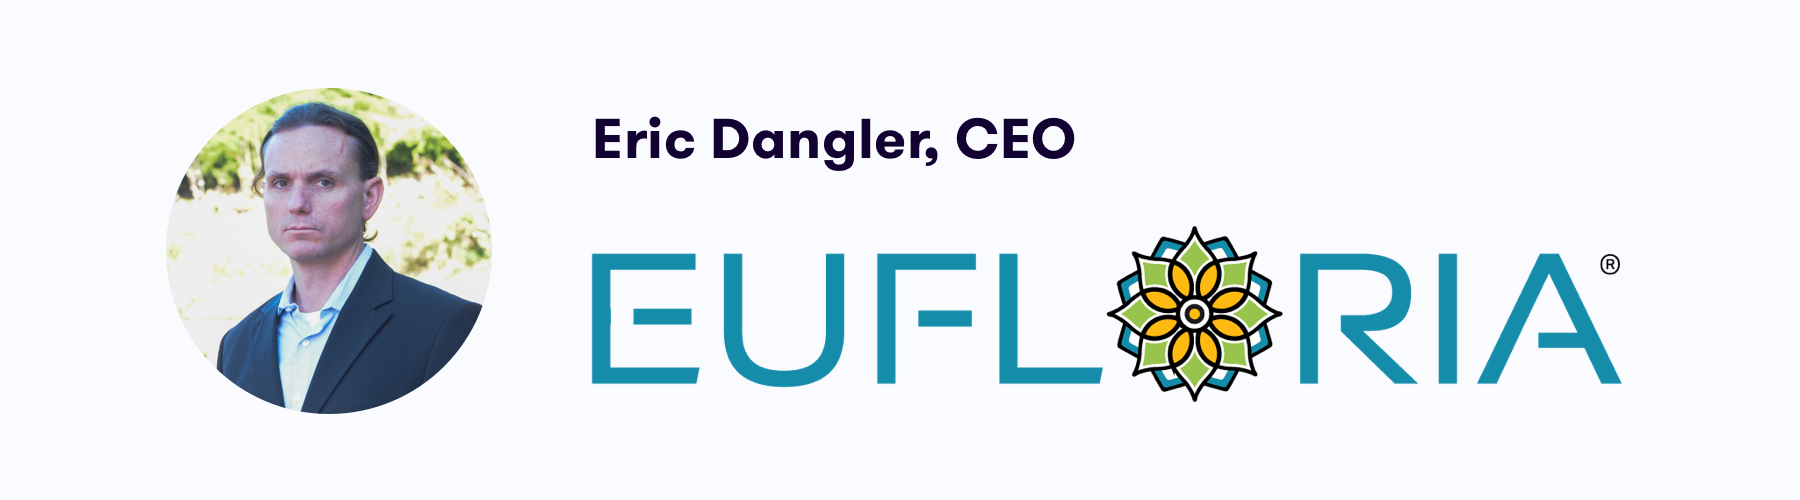 Eric Dangler, CEO of Eufloria, Oklahoma